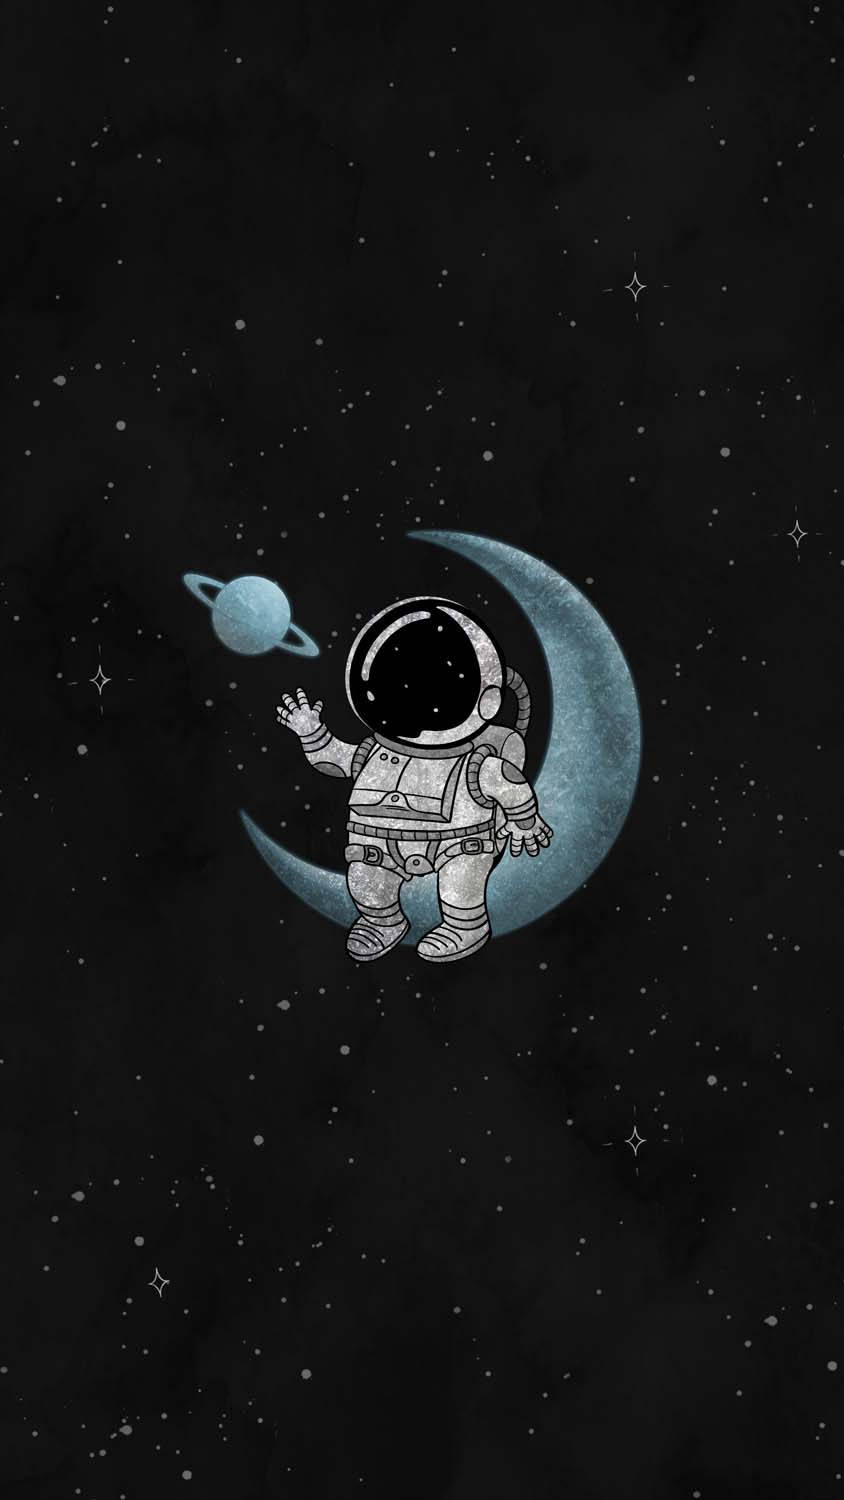 Cartoon Astronaut Sitting On The Moon